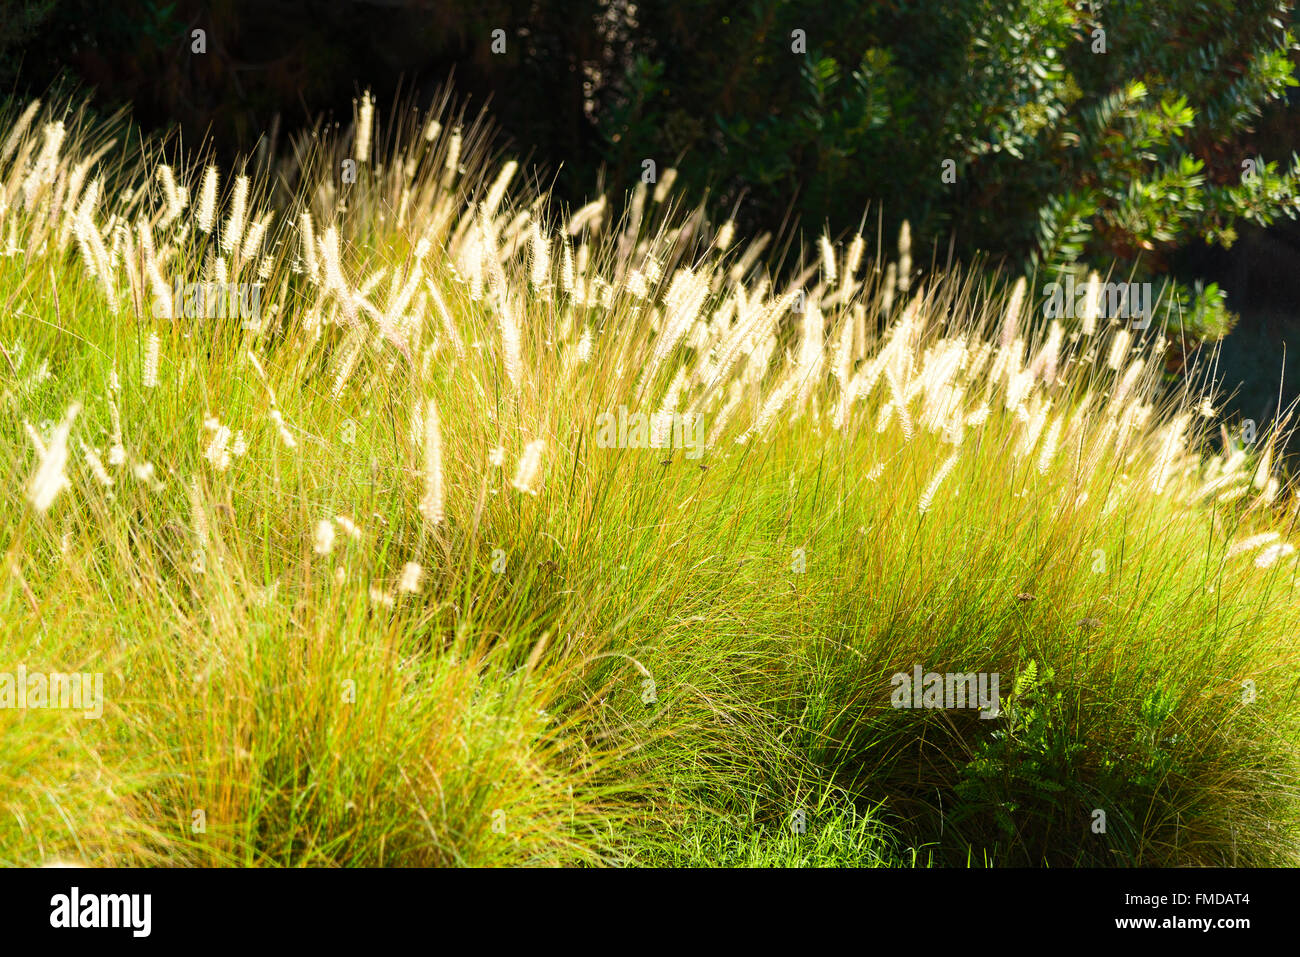 Bereich der Ziergras in voller Blüte mit Sonnenlicht. Grass Blüten haben ein warmes Glühen. Stockfoto